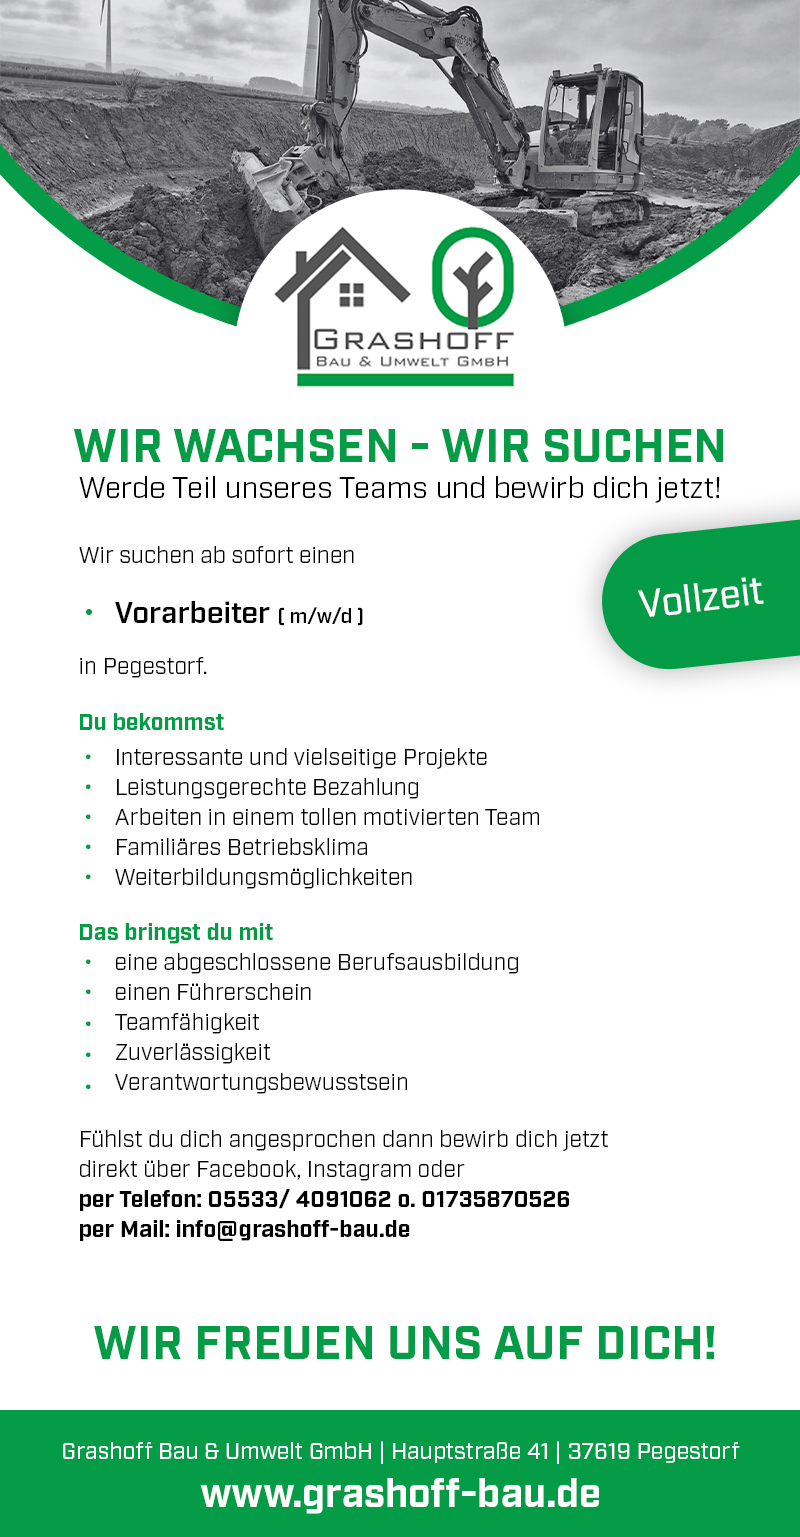 Vorarbeiter (m/w/d) - Grashoff Bau und Umwelt GmbH 